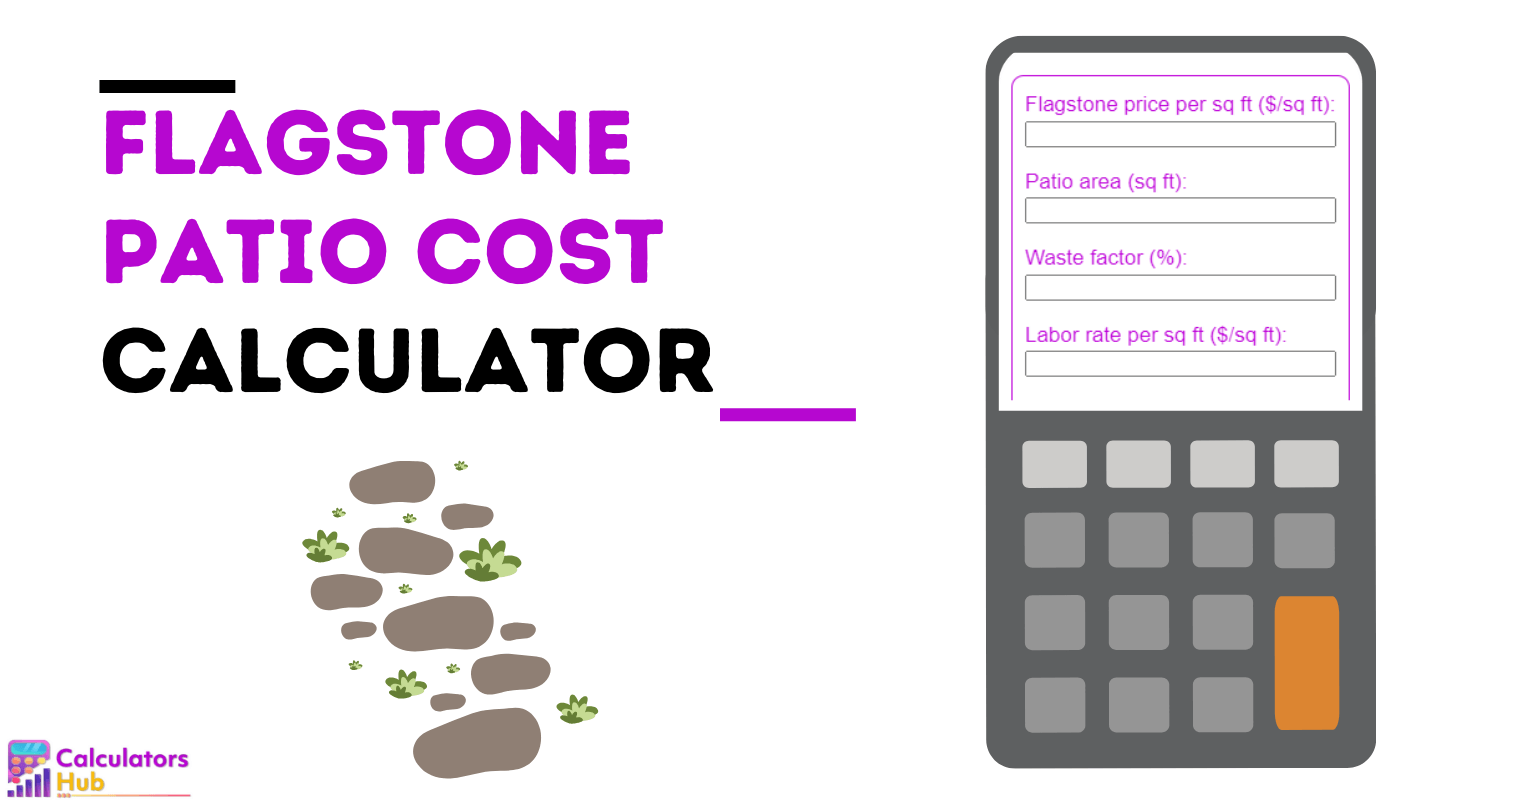 Flagstone Patio Cost Calculator